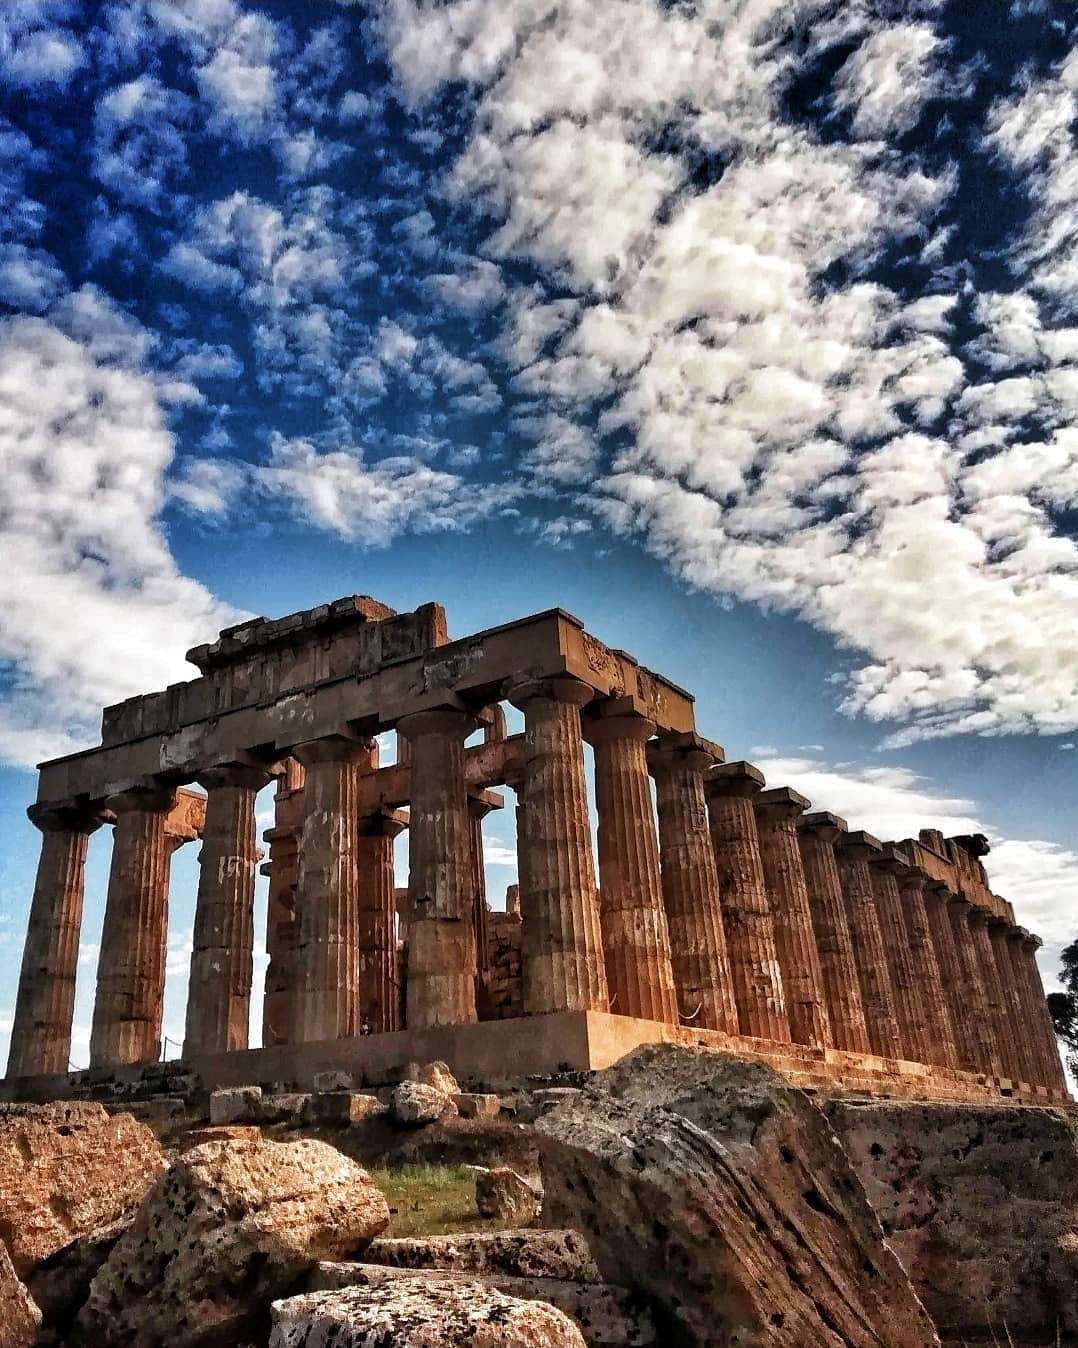 Hy Lạp được coi là trái tim của văn hóa phương Đông và phương Tây. Với những bãi biển trải dài, những ngôi đền cổ kính, cùng những con phố nhỏ đầy màu sắc, Hy Lạp là một điểm đến lý tưởng cho những ai muốn khám phá thế giới. Hãy cùng nhau tìm hiểu về lịch sử, nền văn hóa và ẩm thực đặc sắc của đất nước này.